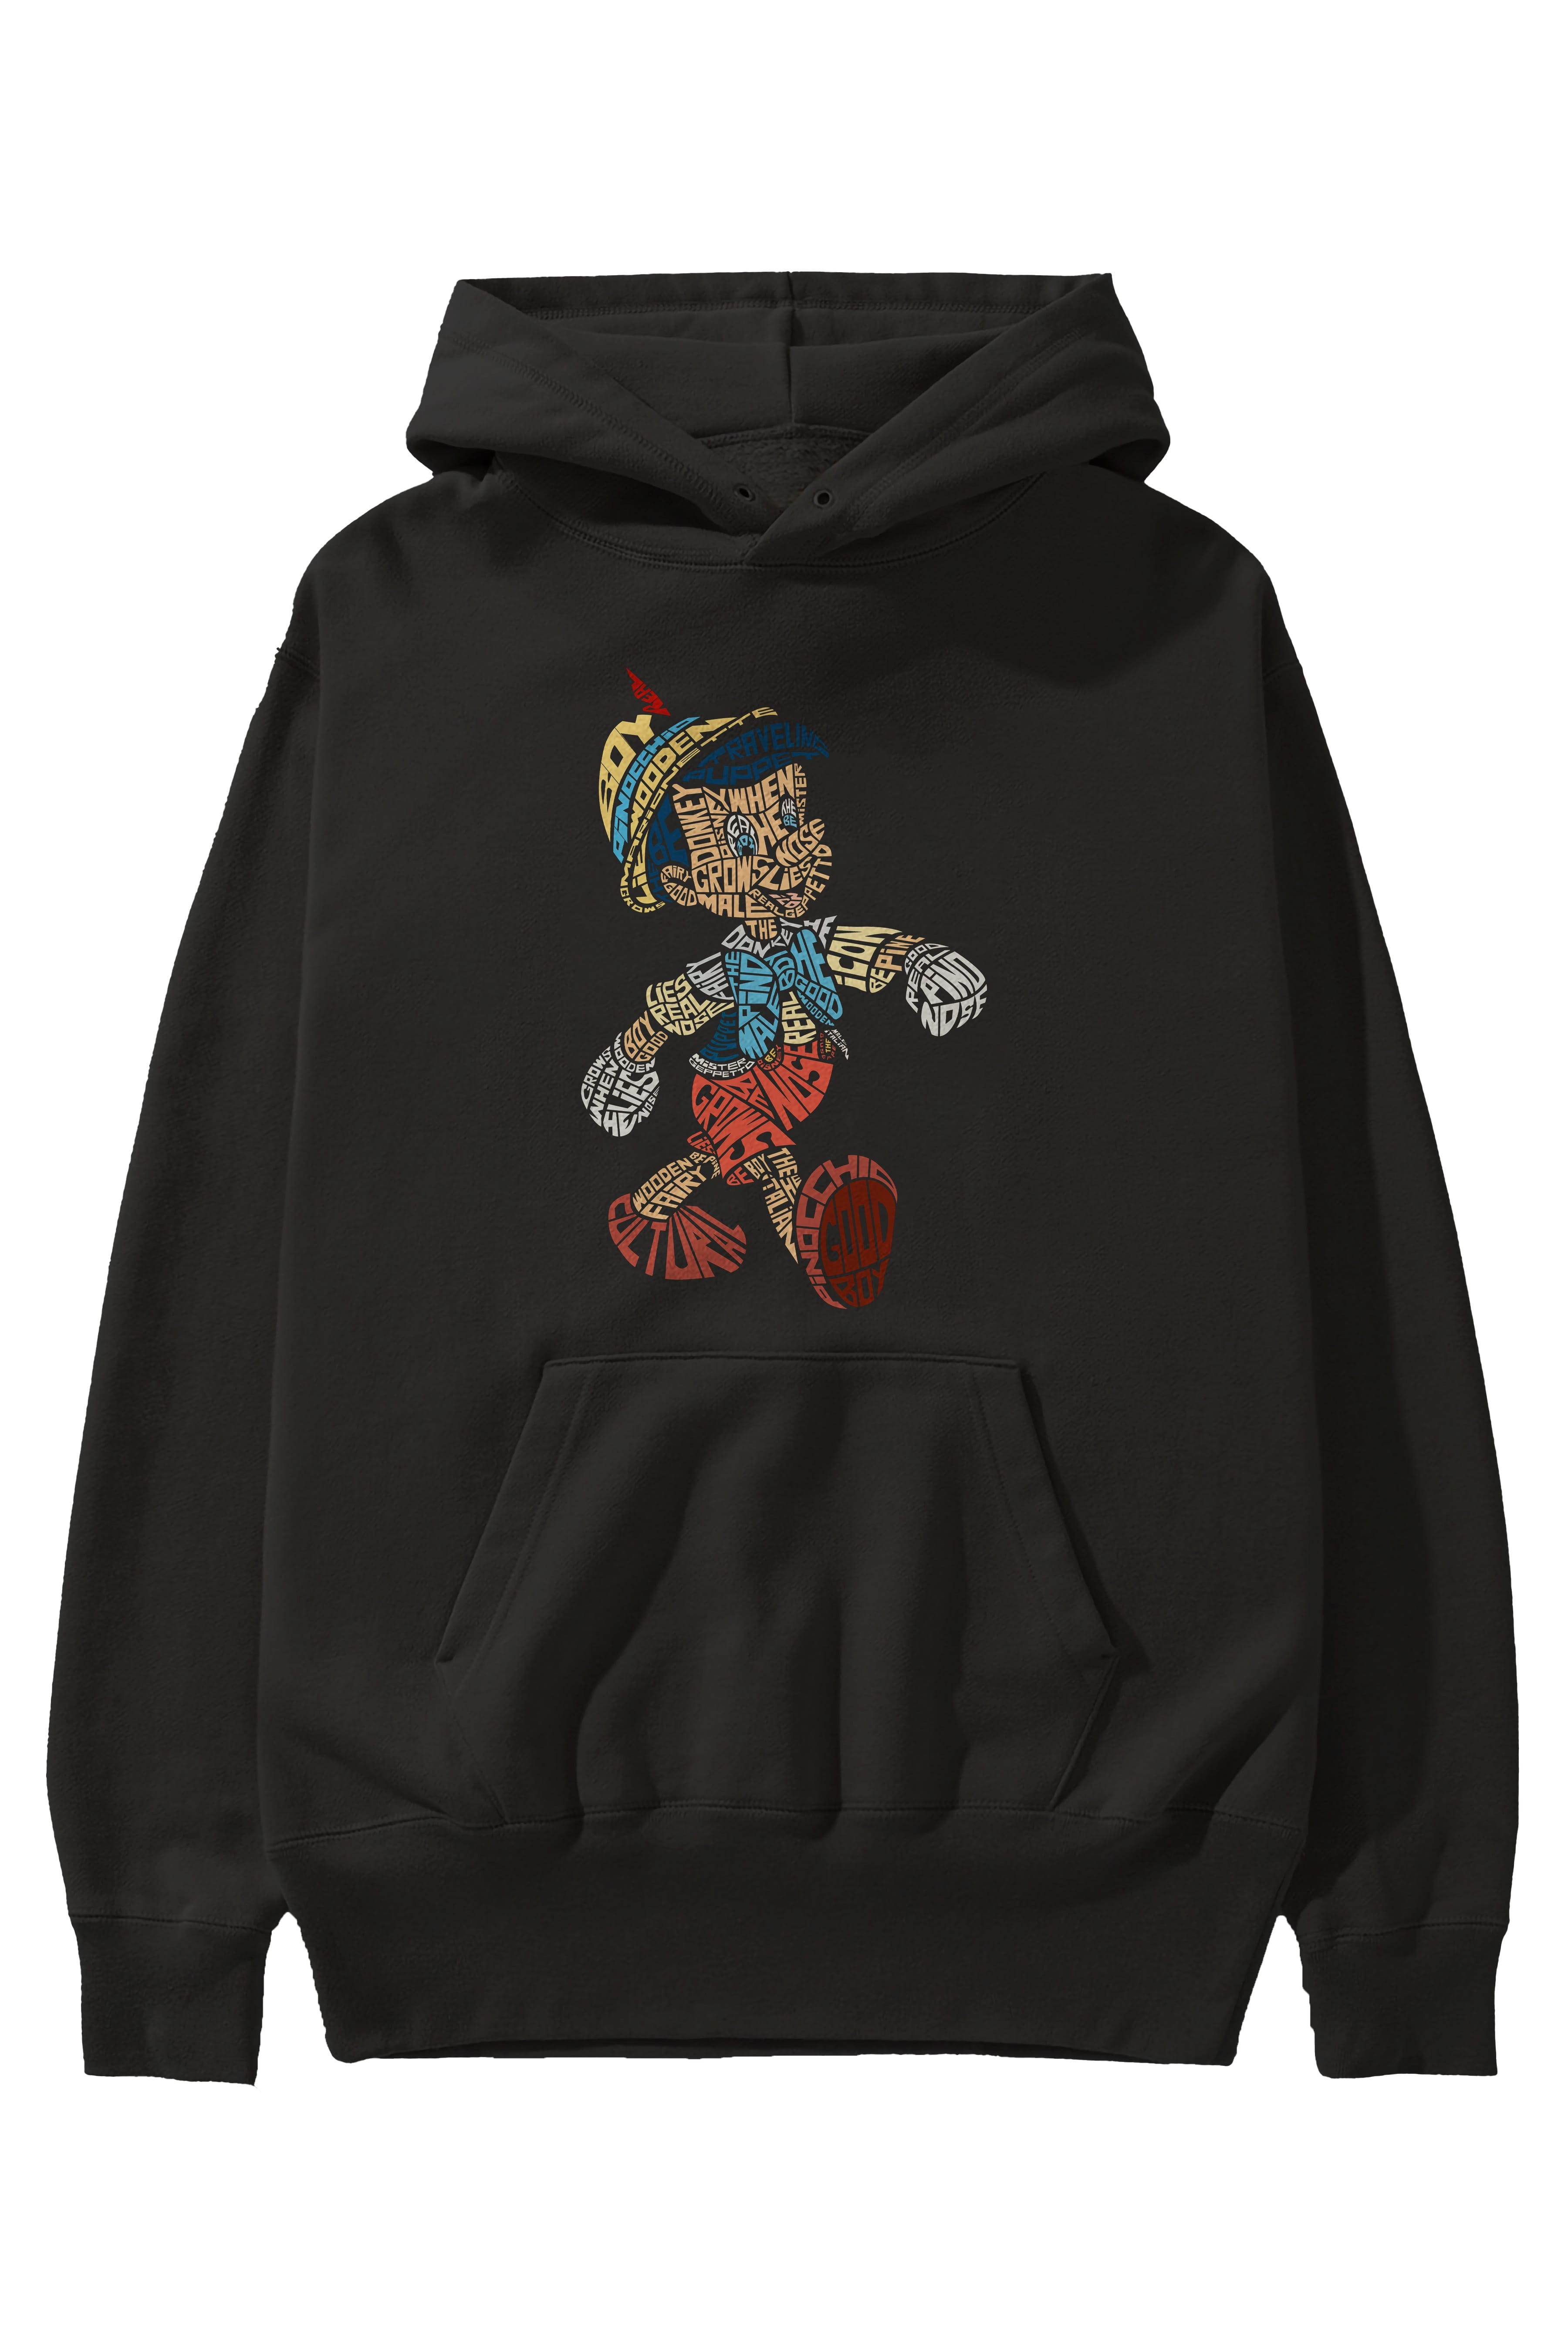 Pinokio Ön Baskılı Hoodie Oversize Kapüşonlu Sweatshirt Erkek Kadın Unisex